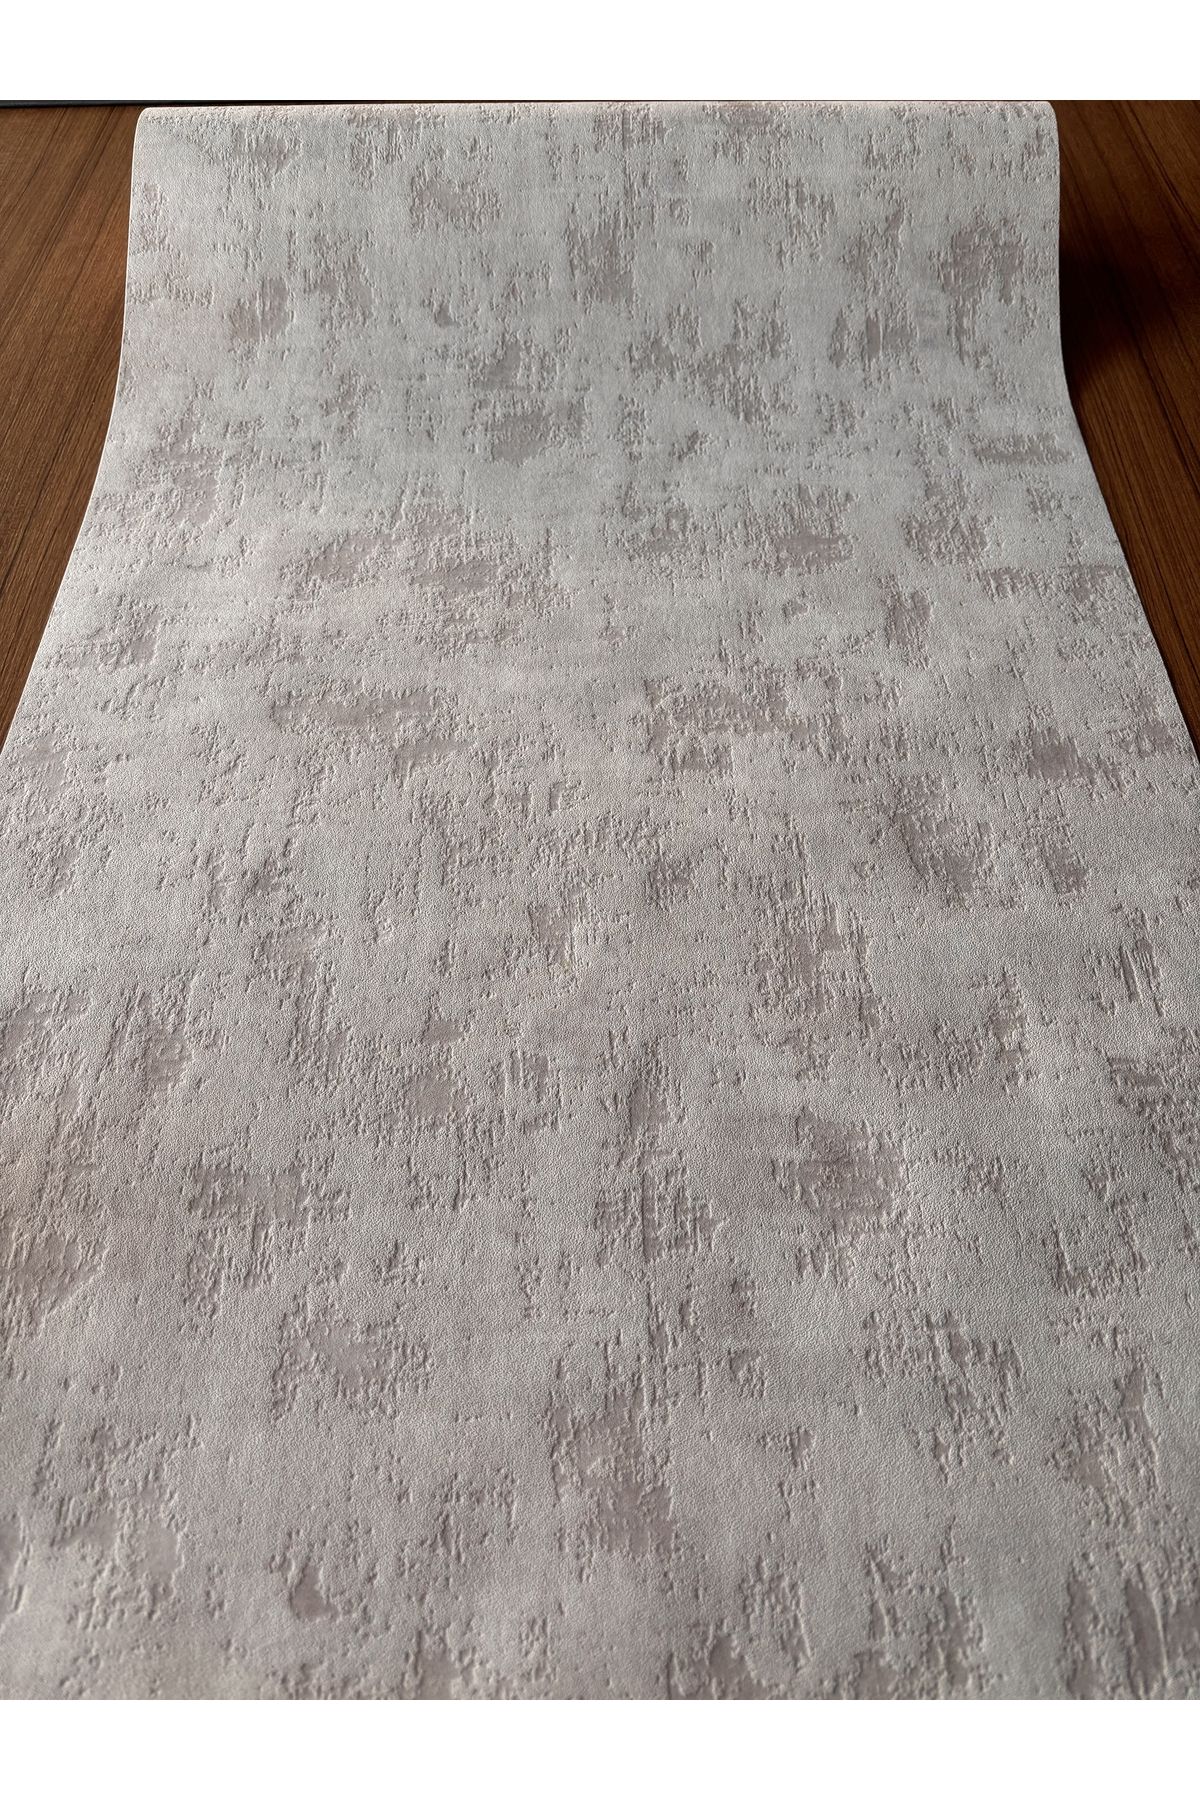 BAŞYAPI DİZAYN Toz Pembe Kendinden Desen İthal Vinly Duvar Kağıdı (5m²)